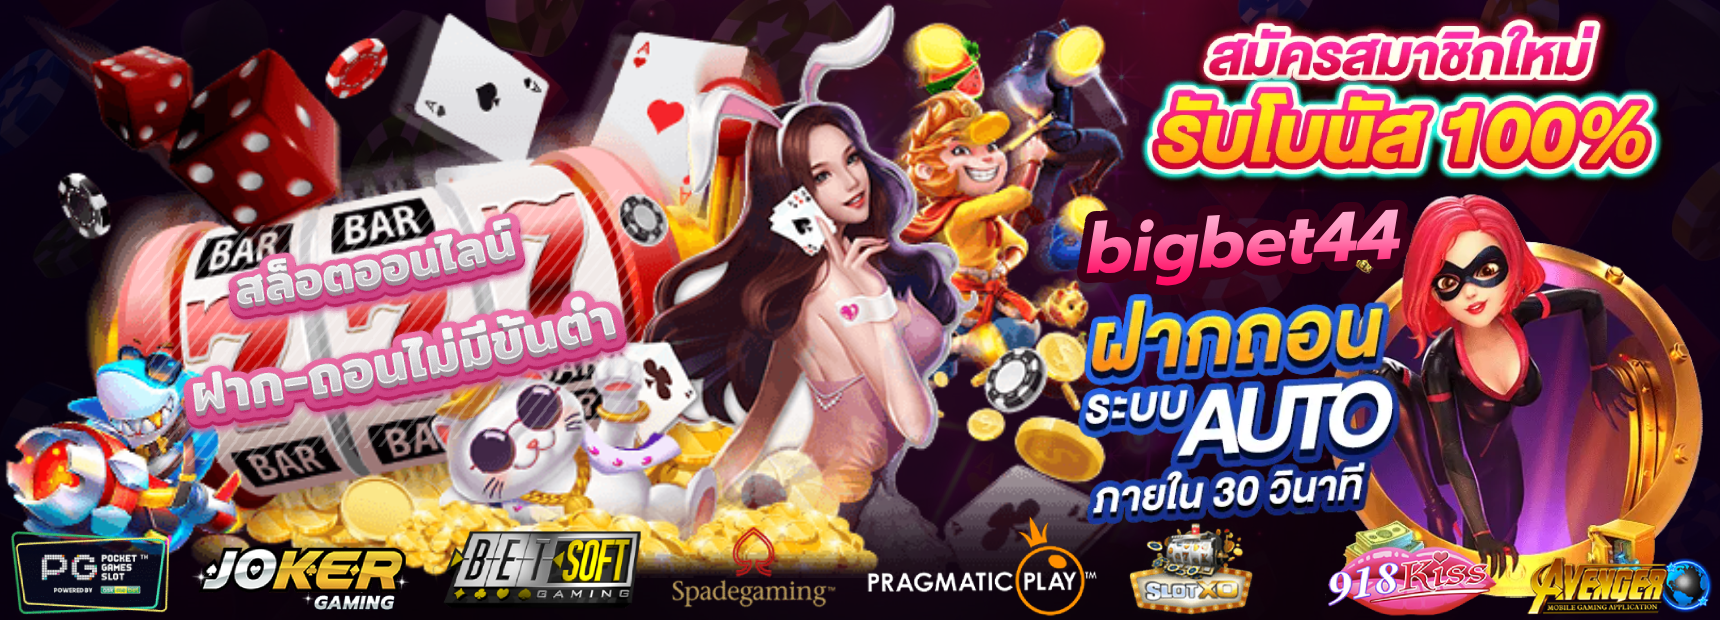 bigbet44 เว็บเกมสล็อตชั้นนำ อันดับ 1 ในไทย